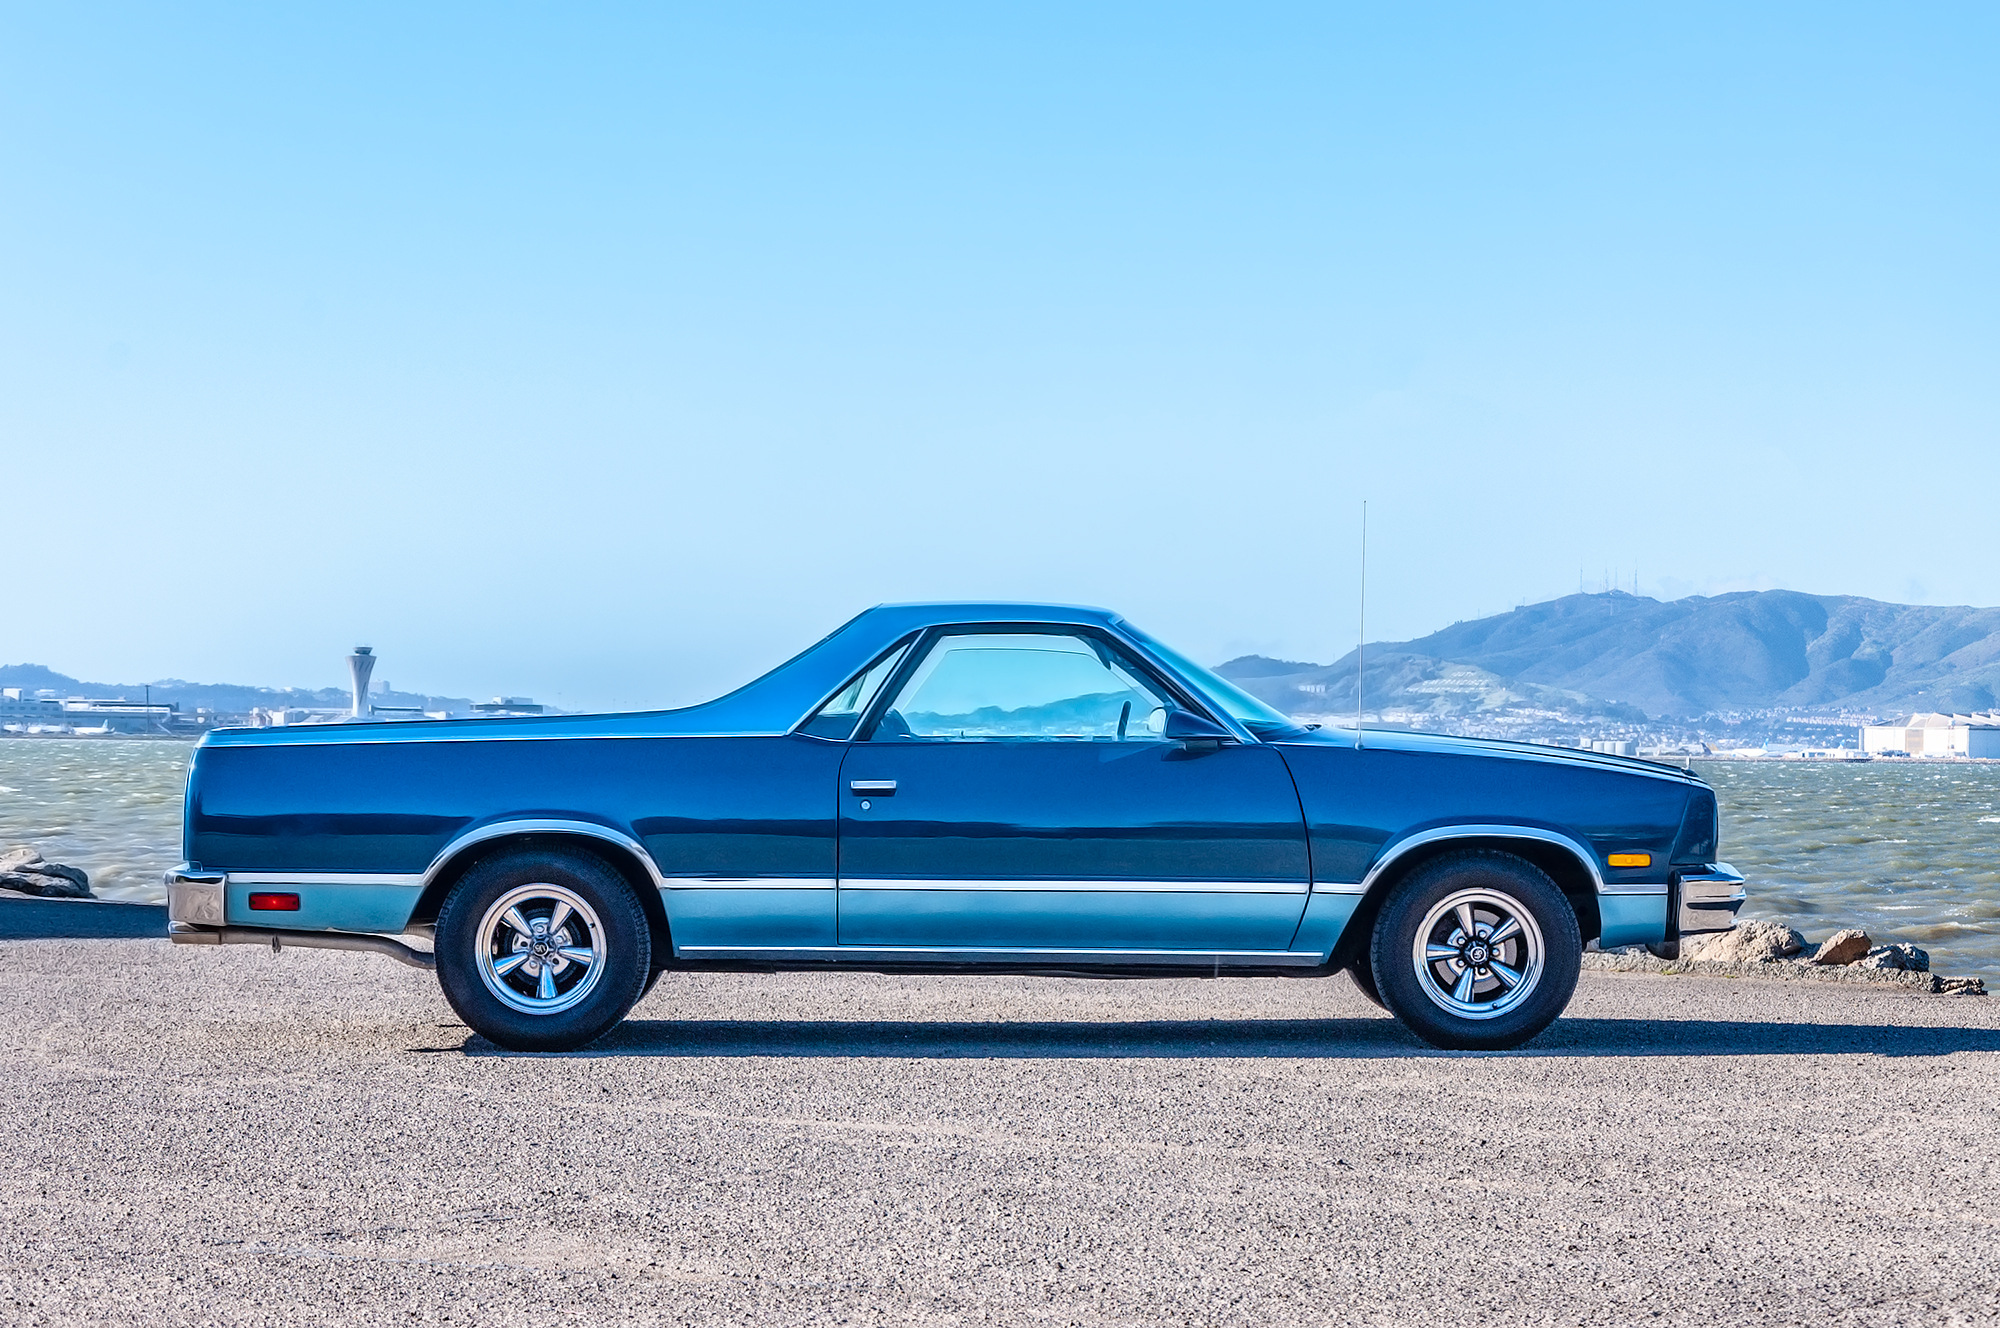 Side profile view 1986 Chevrolet El Camino Conquista in custom two tone blue color scheme